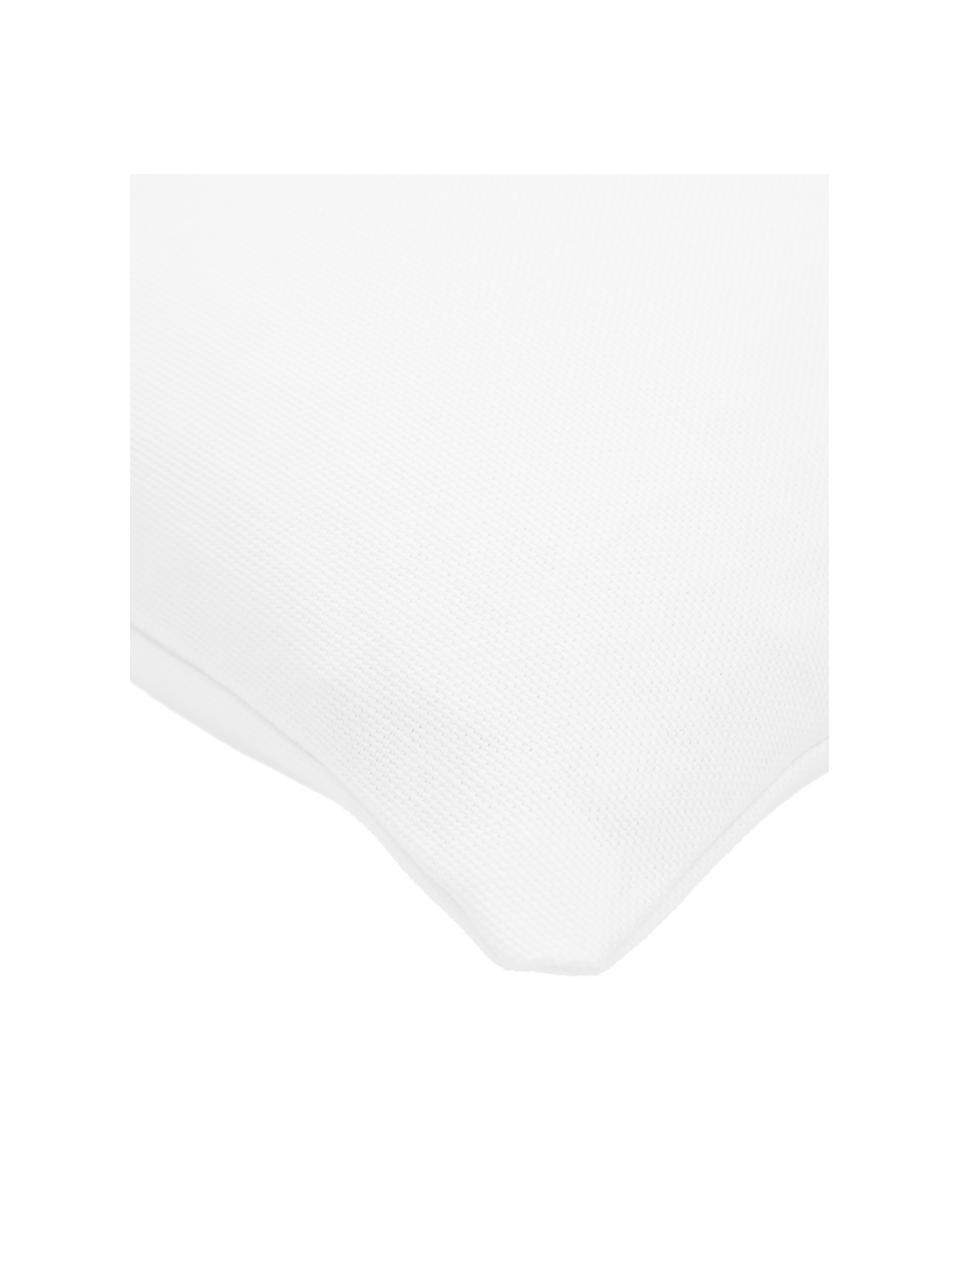 Federa arredo con disegno astratto Morpho, 100% cotone, Bianco, nero, Larg. 40 x Lung. 40 cm